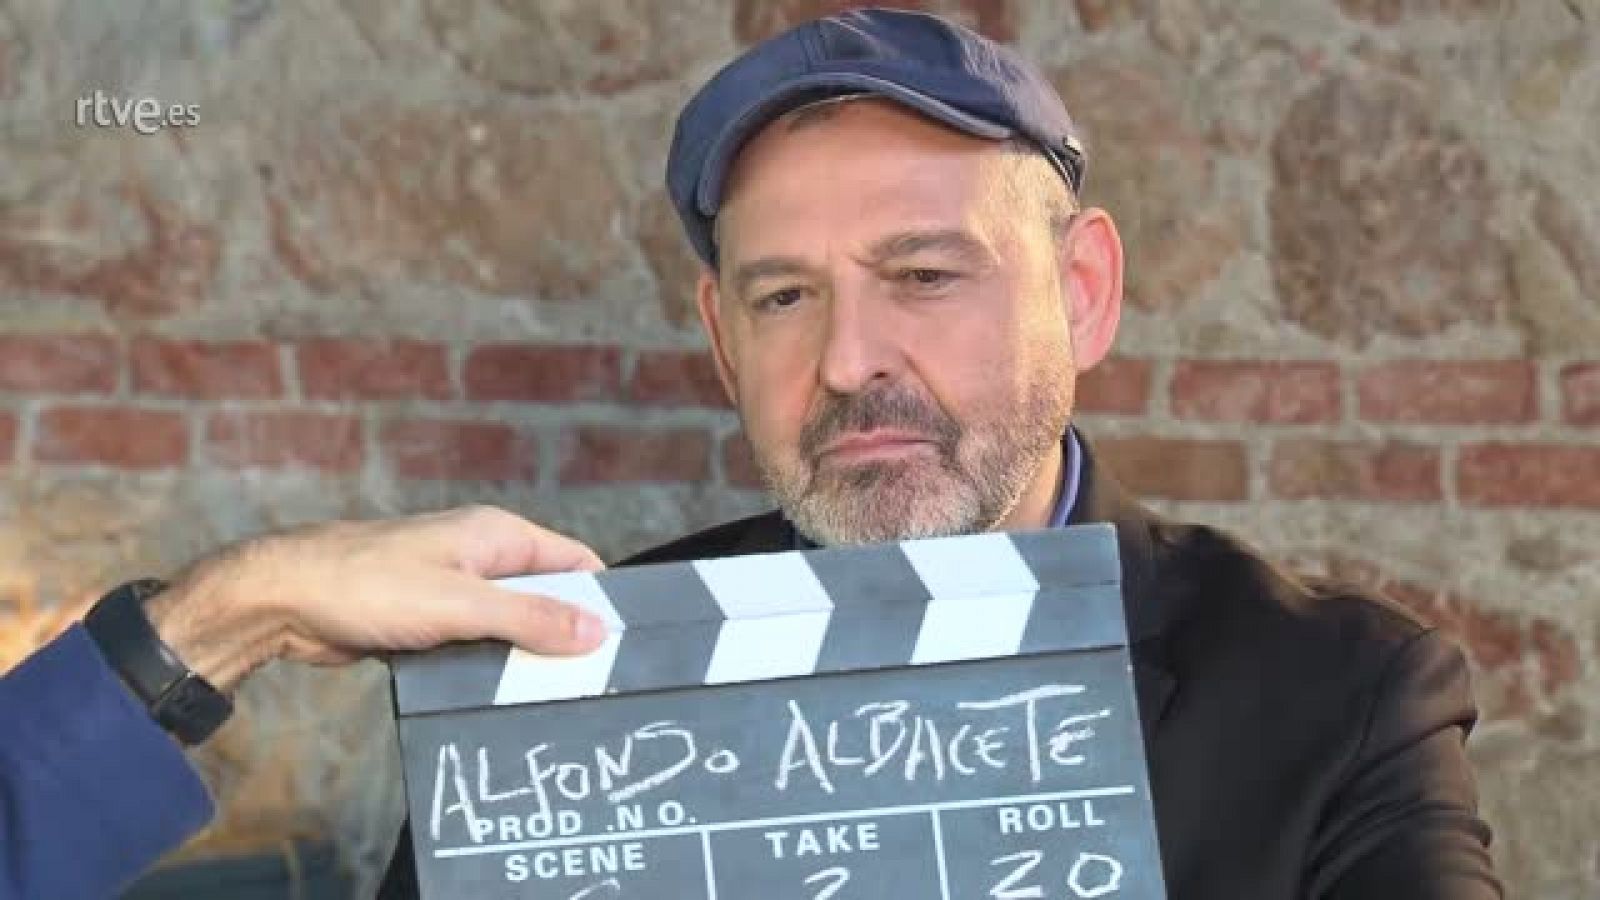 Entrevista completa con Alfonso Albacete (en exclusiva en RTVE.es)